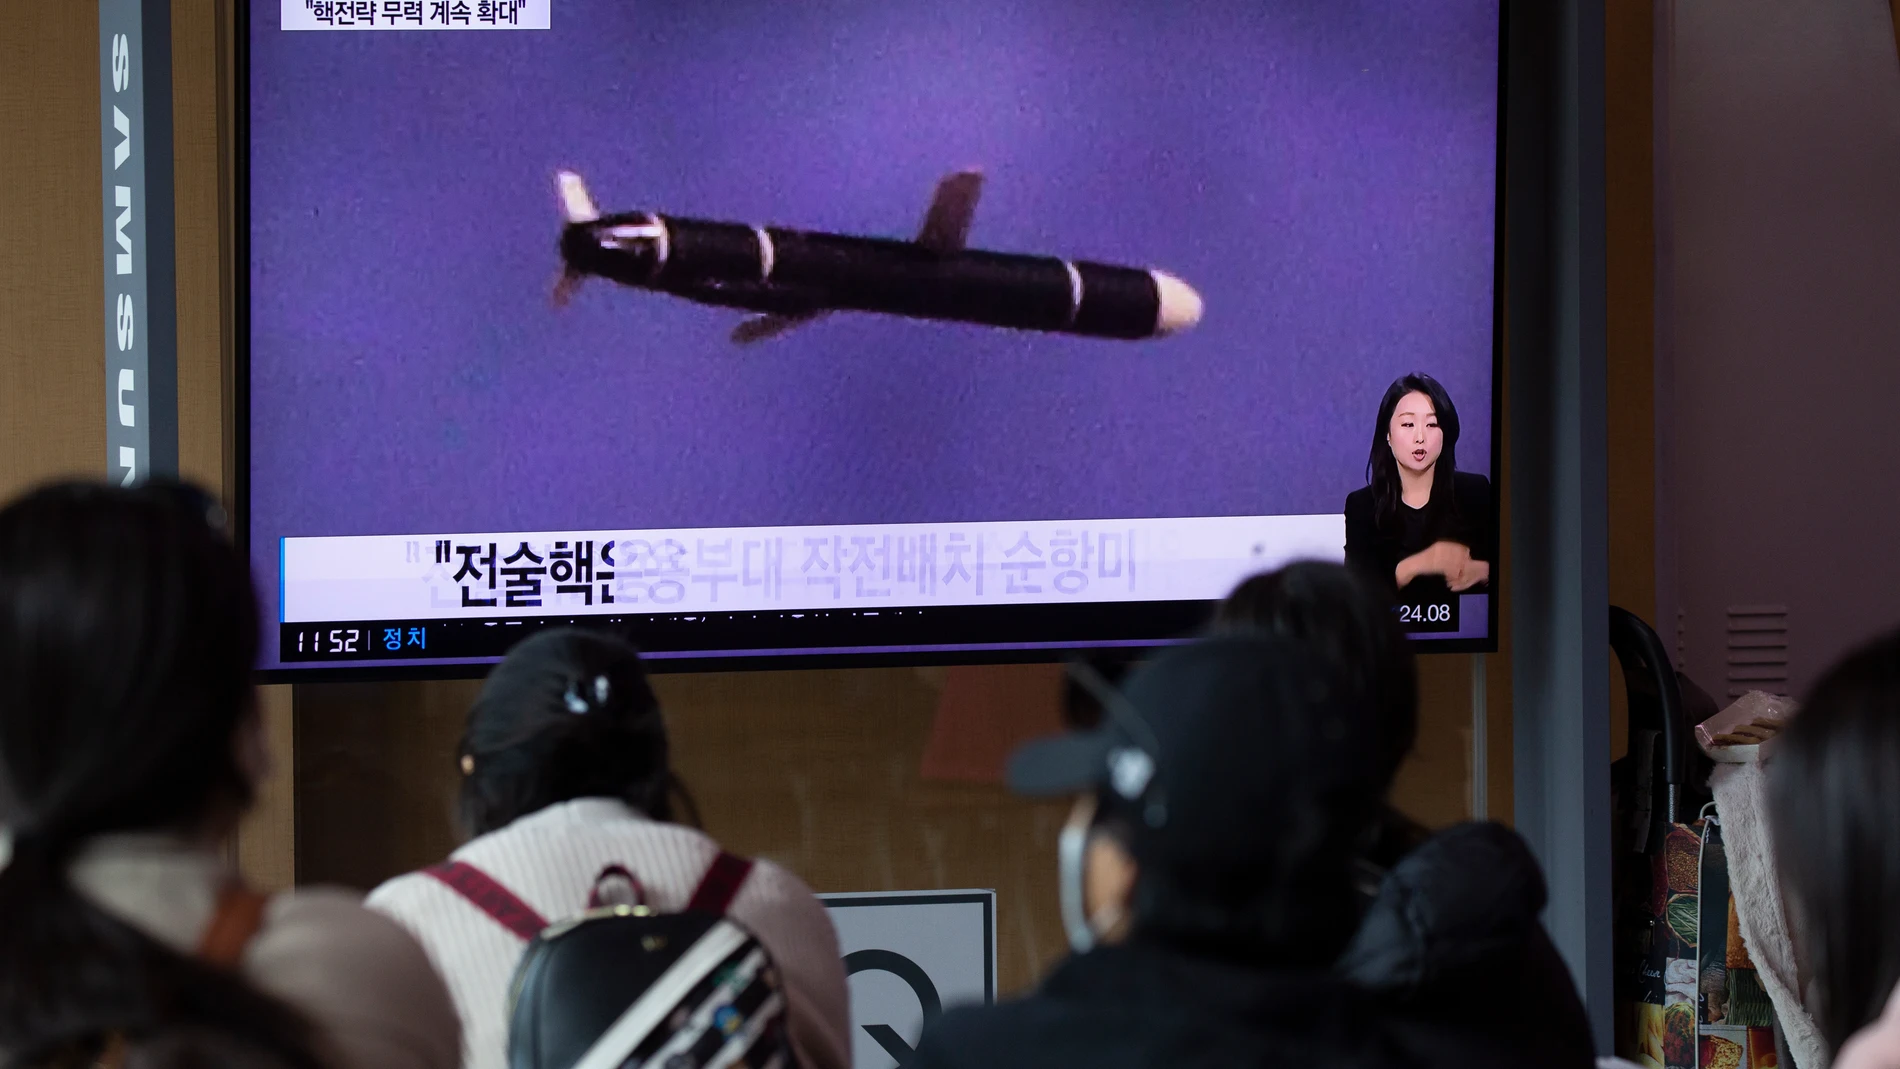 Ciudadanos surcoreanos miran por televisión el lanzamiento de un nuevo misil norcoreano